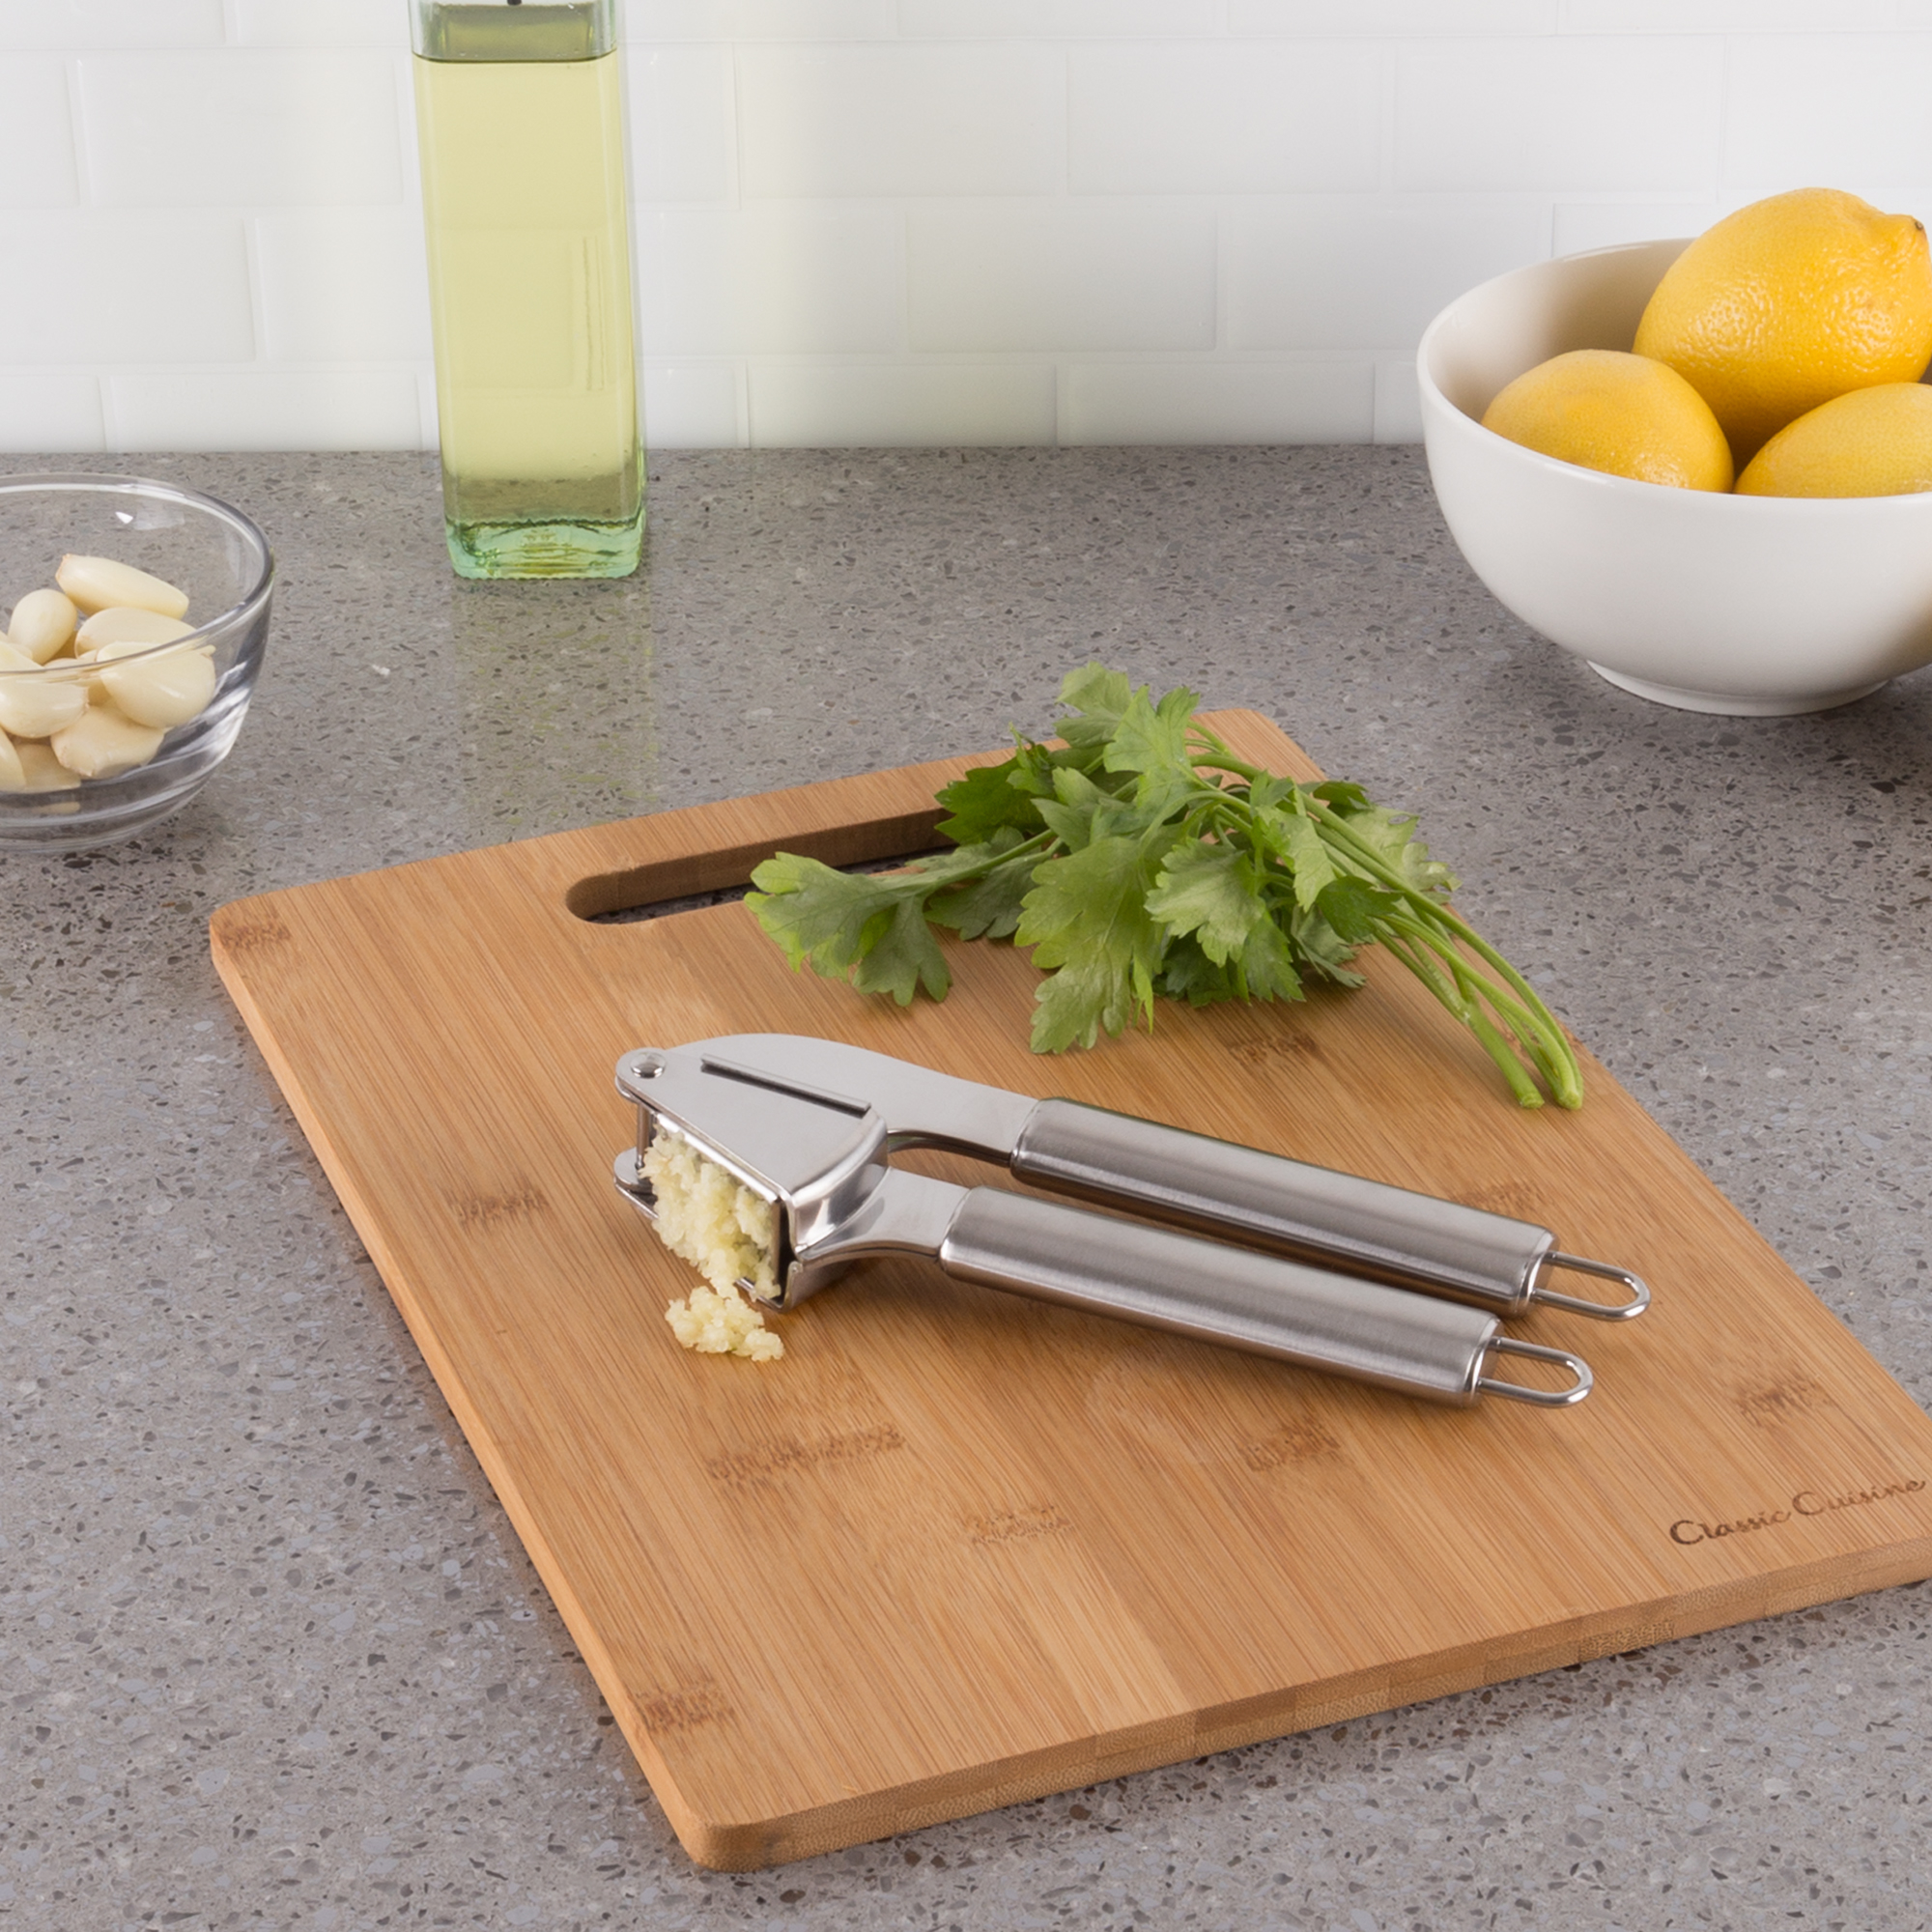 Handheld Stainless Steel Garlic Press and Pressing Tool for Garlic Skin Peeler